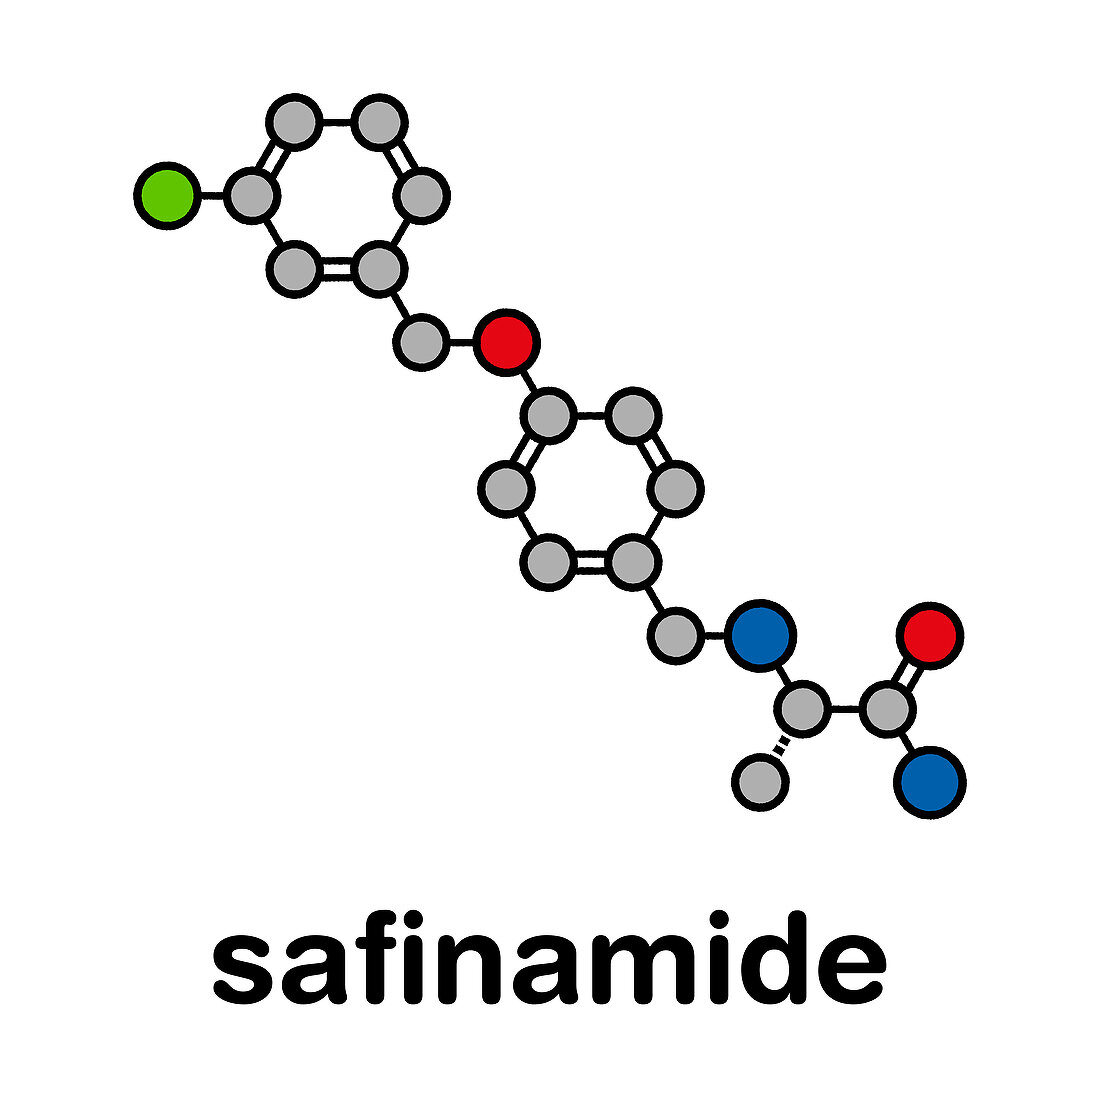 Safinamide Parkinsons disease drug molecule, illustration